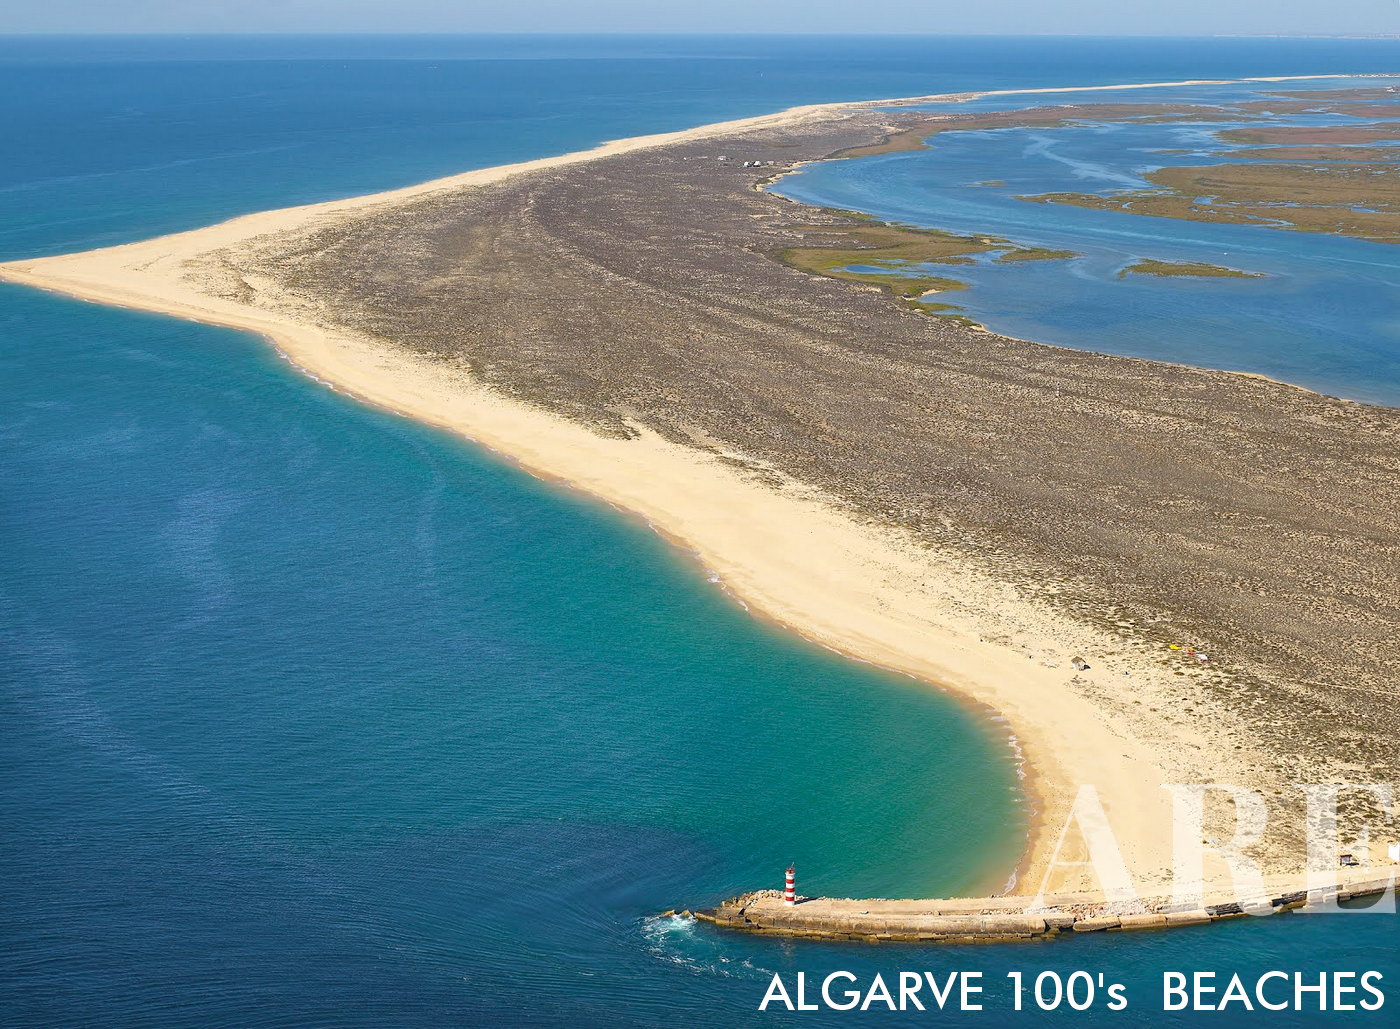 A Praia da Ilha Deserta, também conhecida como Ilha Deserta, é um paraíso intocado situado no Parque Natural da Ria Formosa, perto de Faro, Portugal. Esta ilha é desabitada, proporcionando aos visitantes uma experiência costeira isolada e intocada.